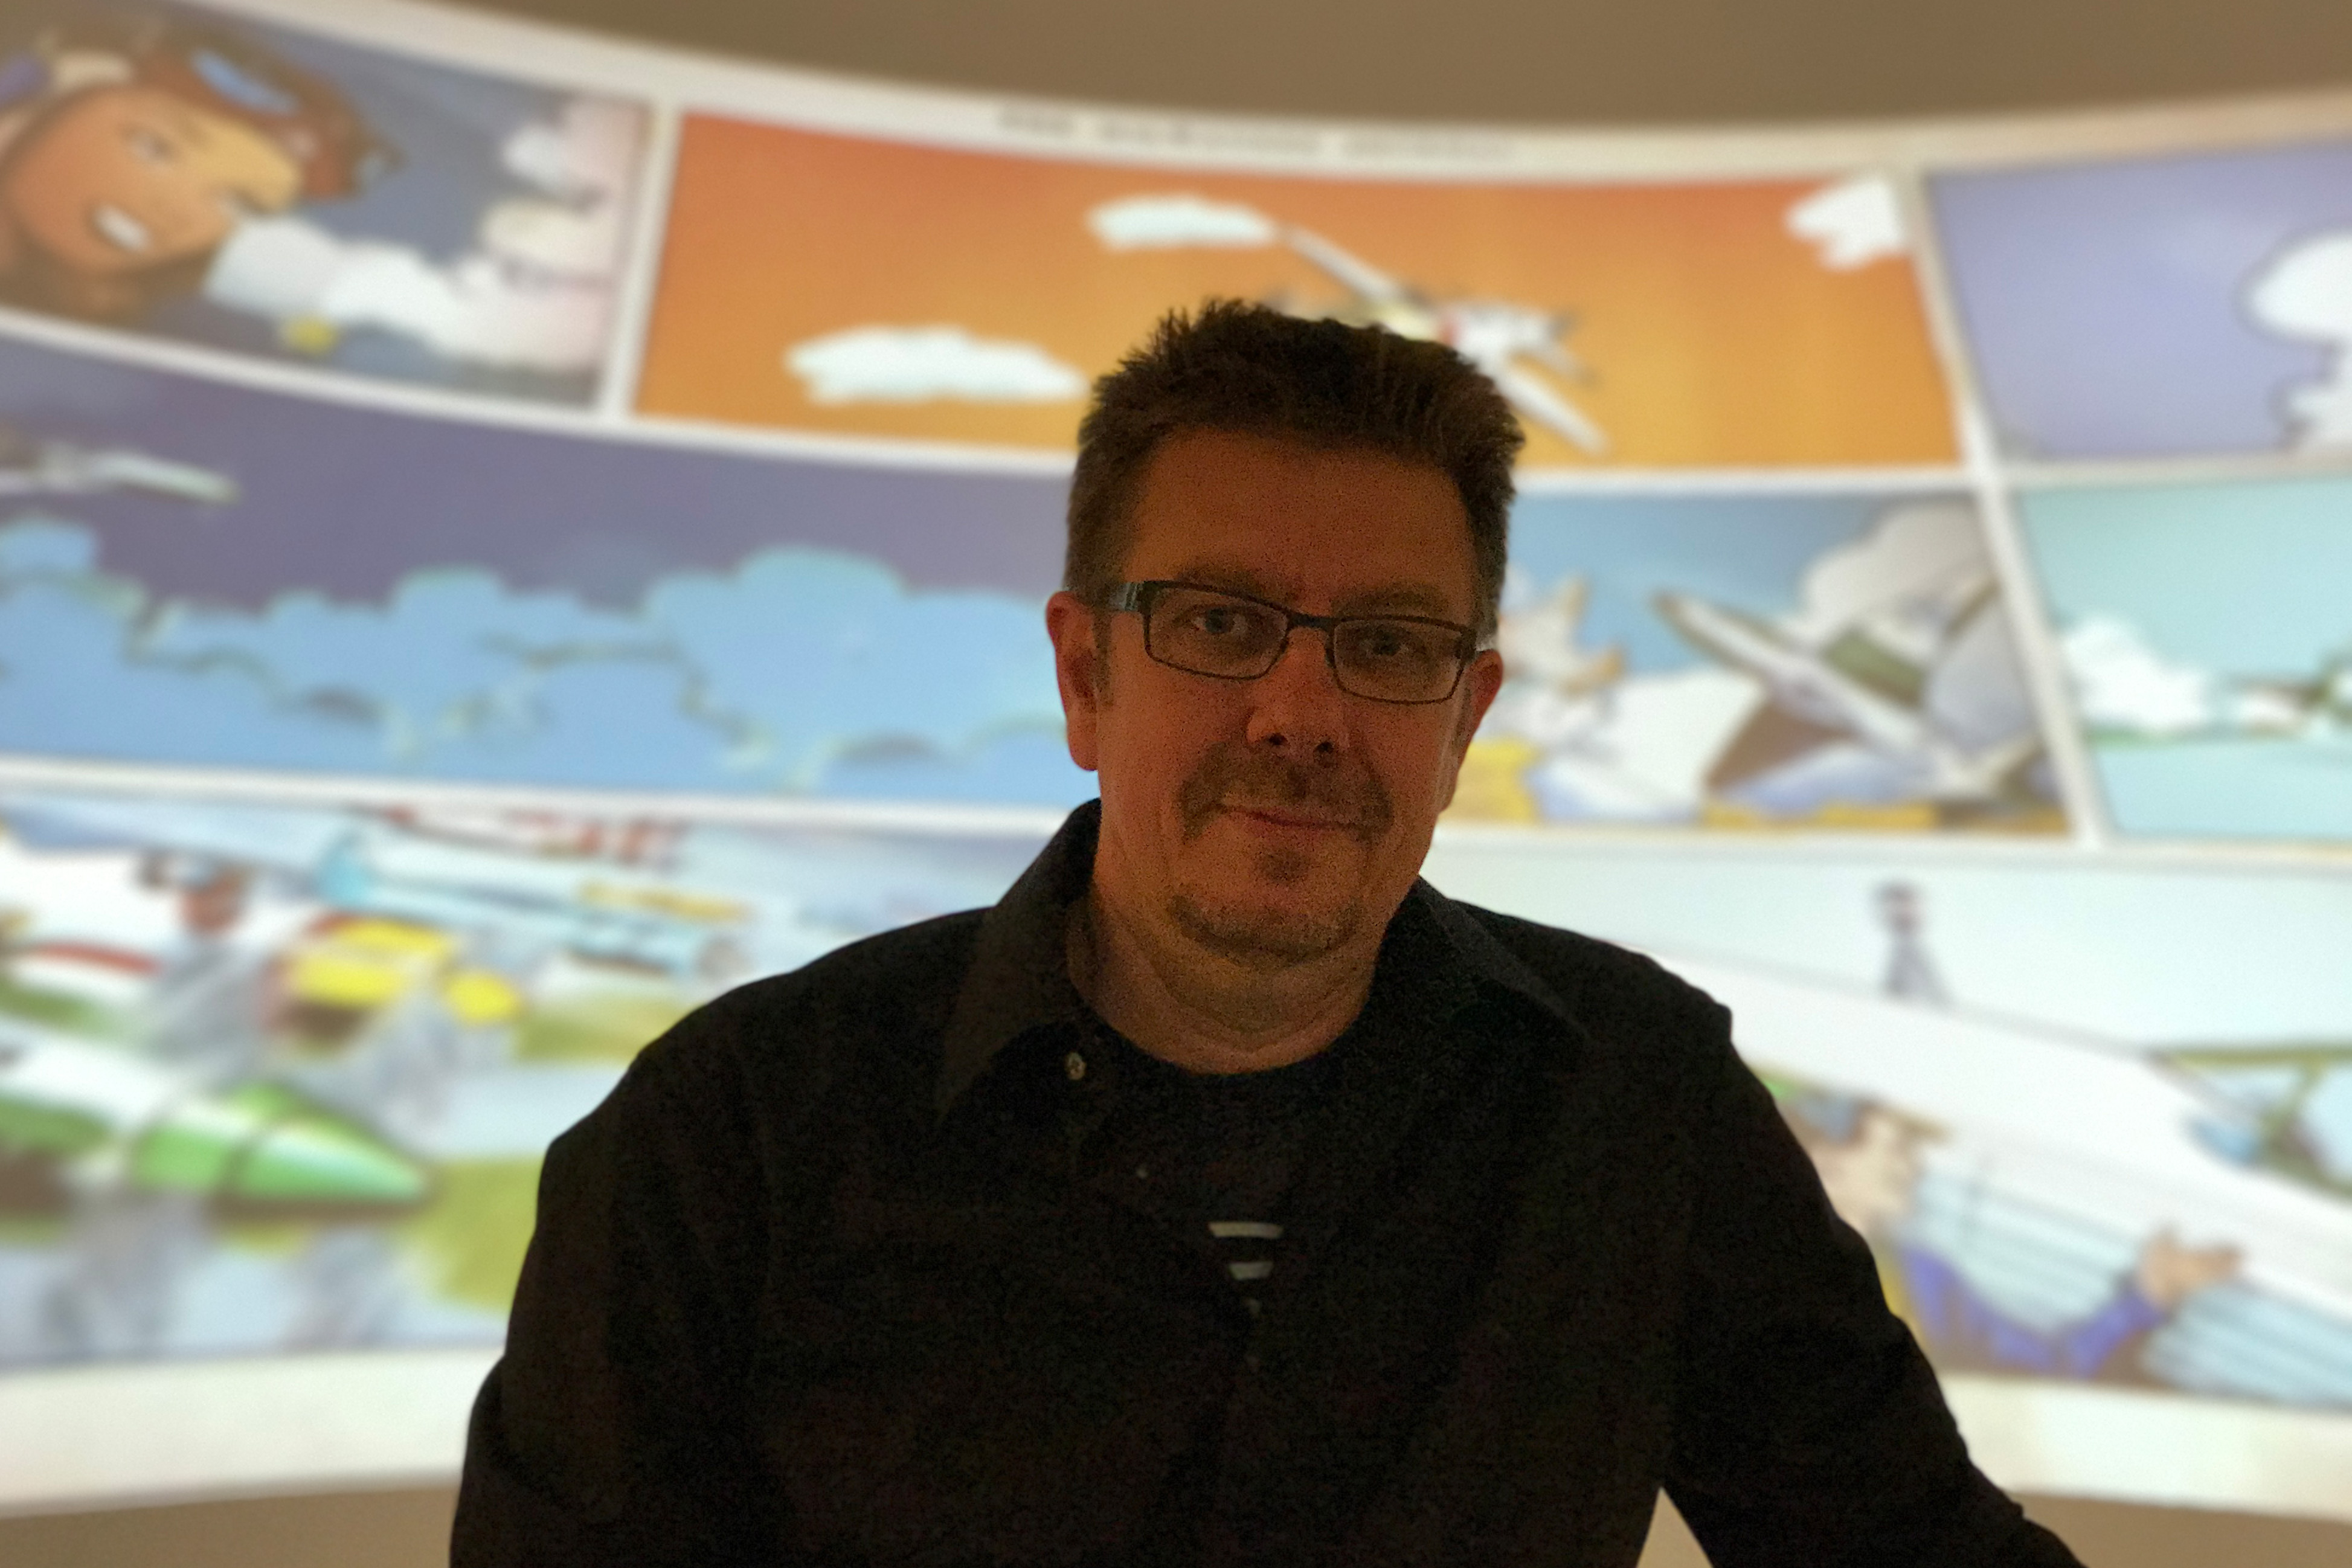 Alexander Braun posiert vor einem Comic-Film, der in der Ausstellung gezeigt wird